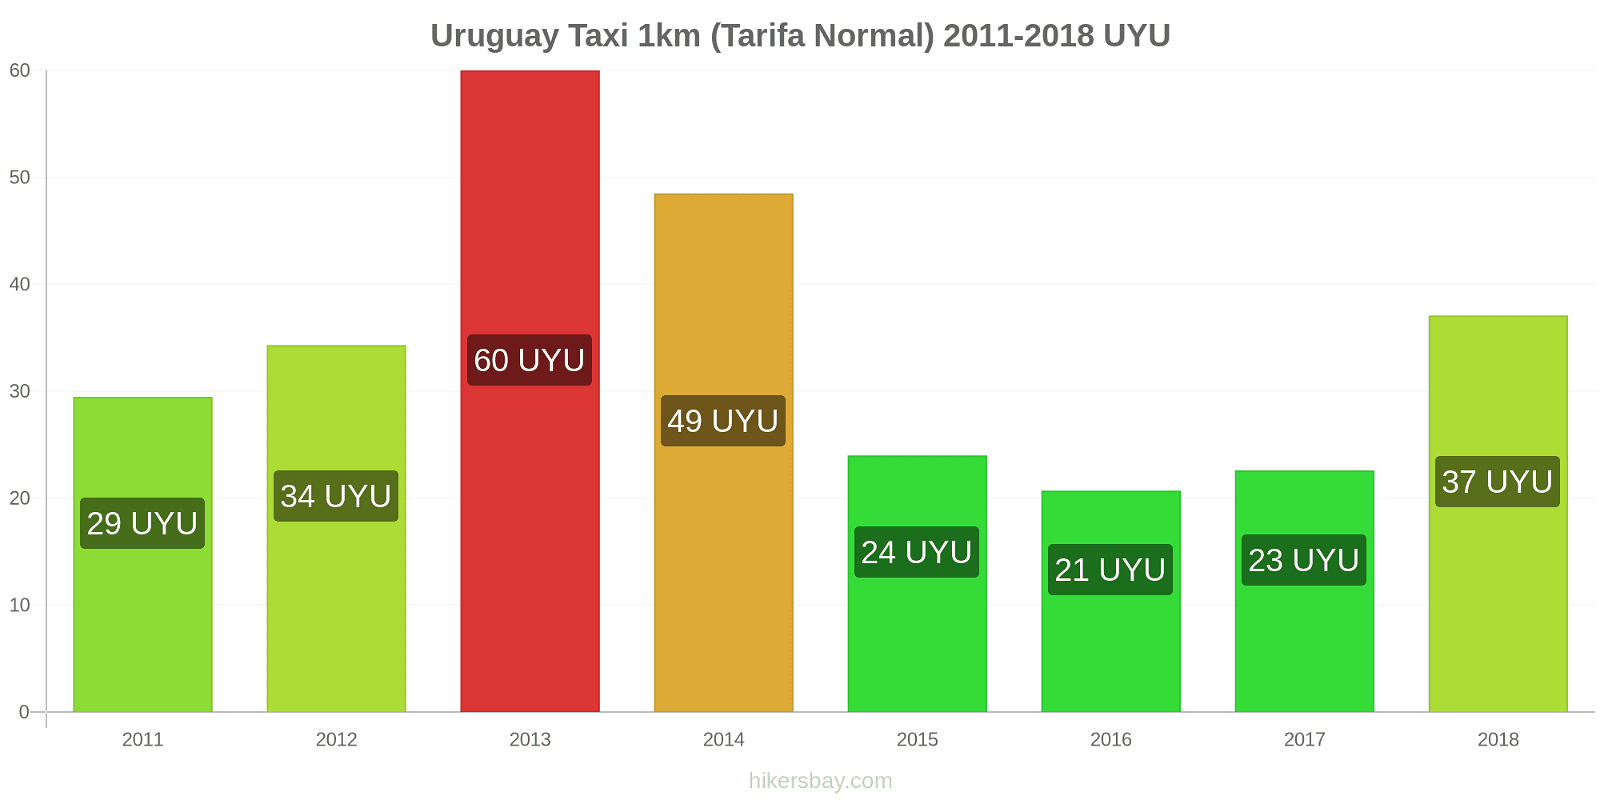 Uruguay cambios de precios Taxi 1km (tarifa normal) hikersbay.com